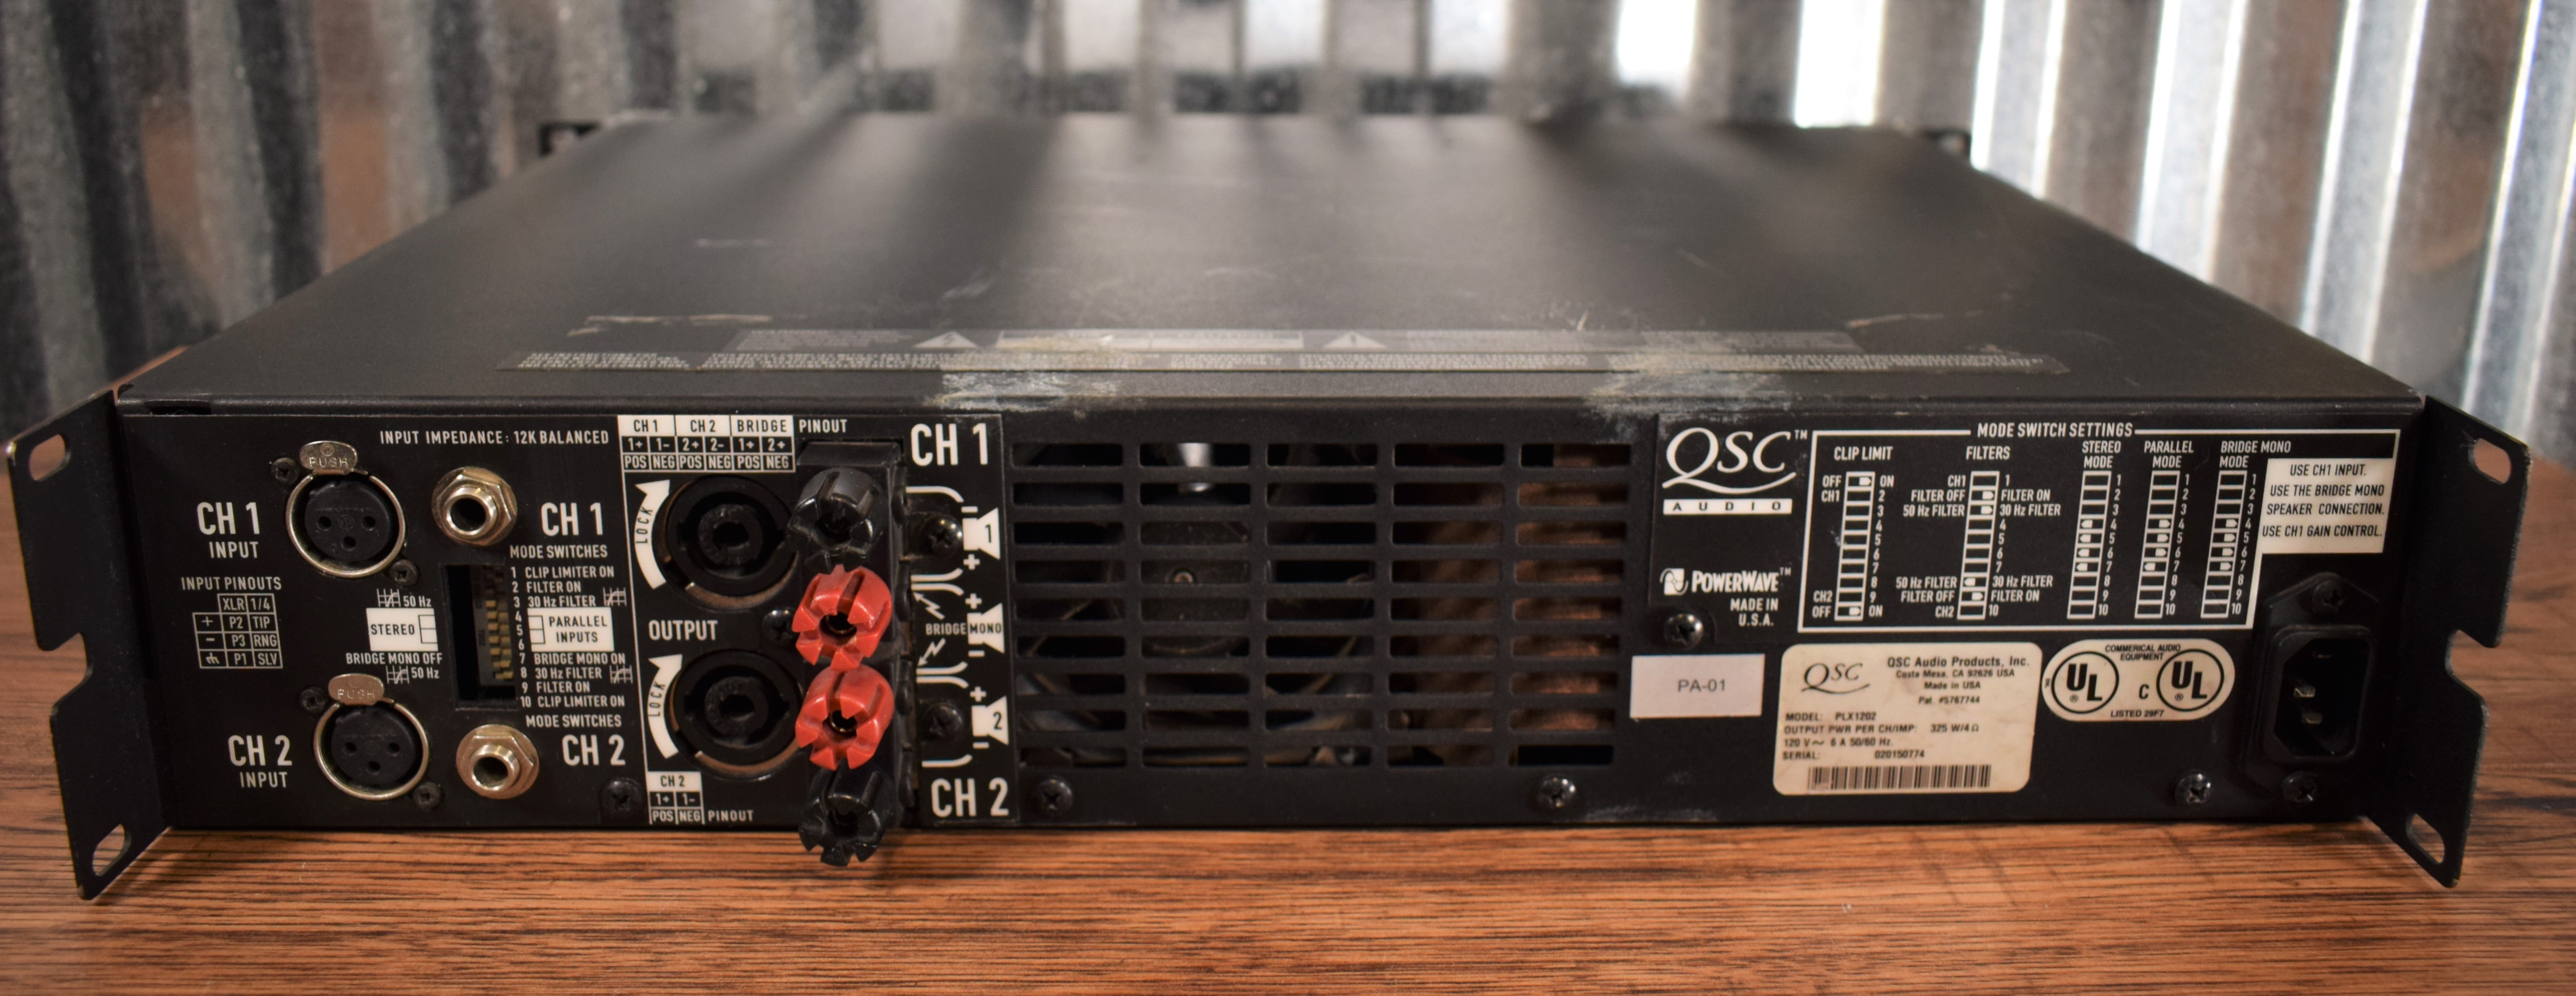 QSC Audio PLX1202 Pro 1200 Watt Two Channel Power Amplifier Used